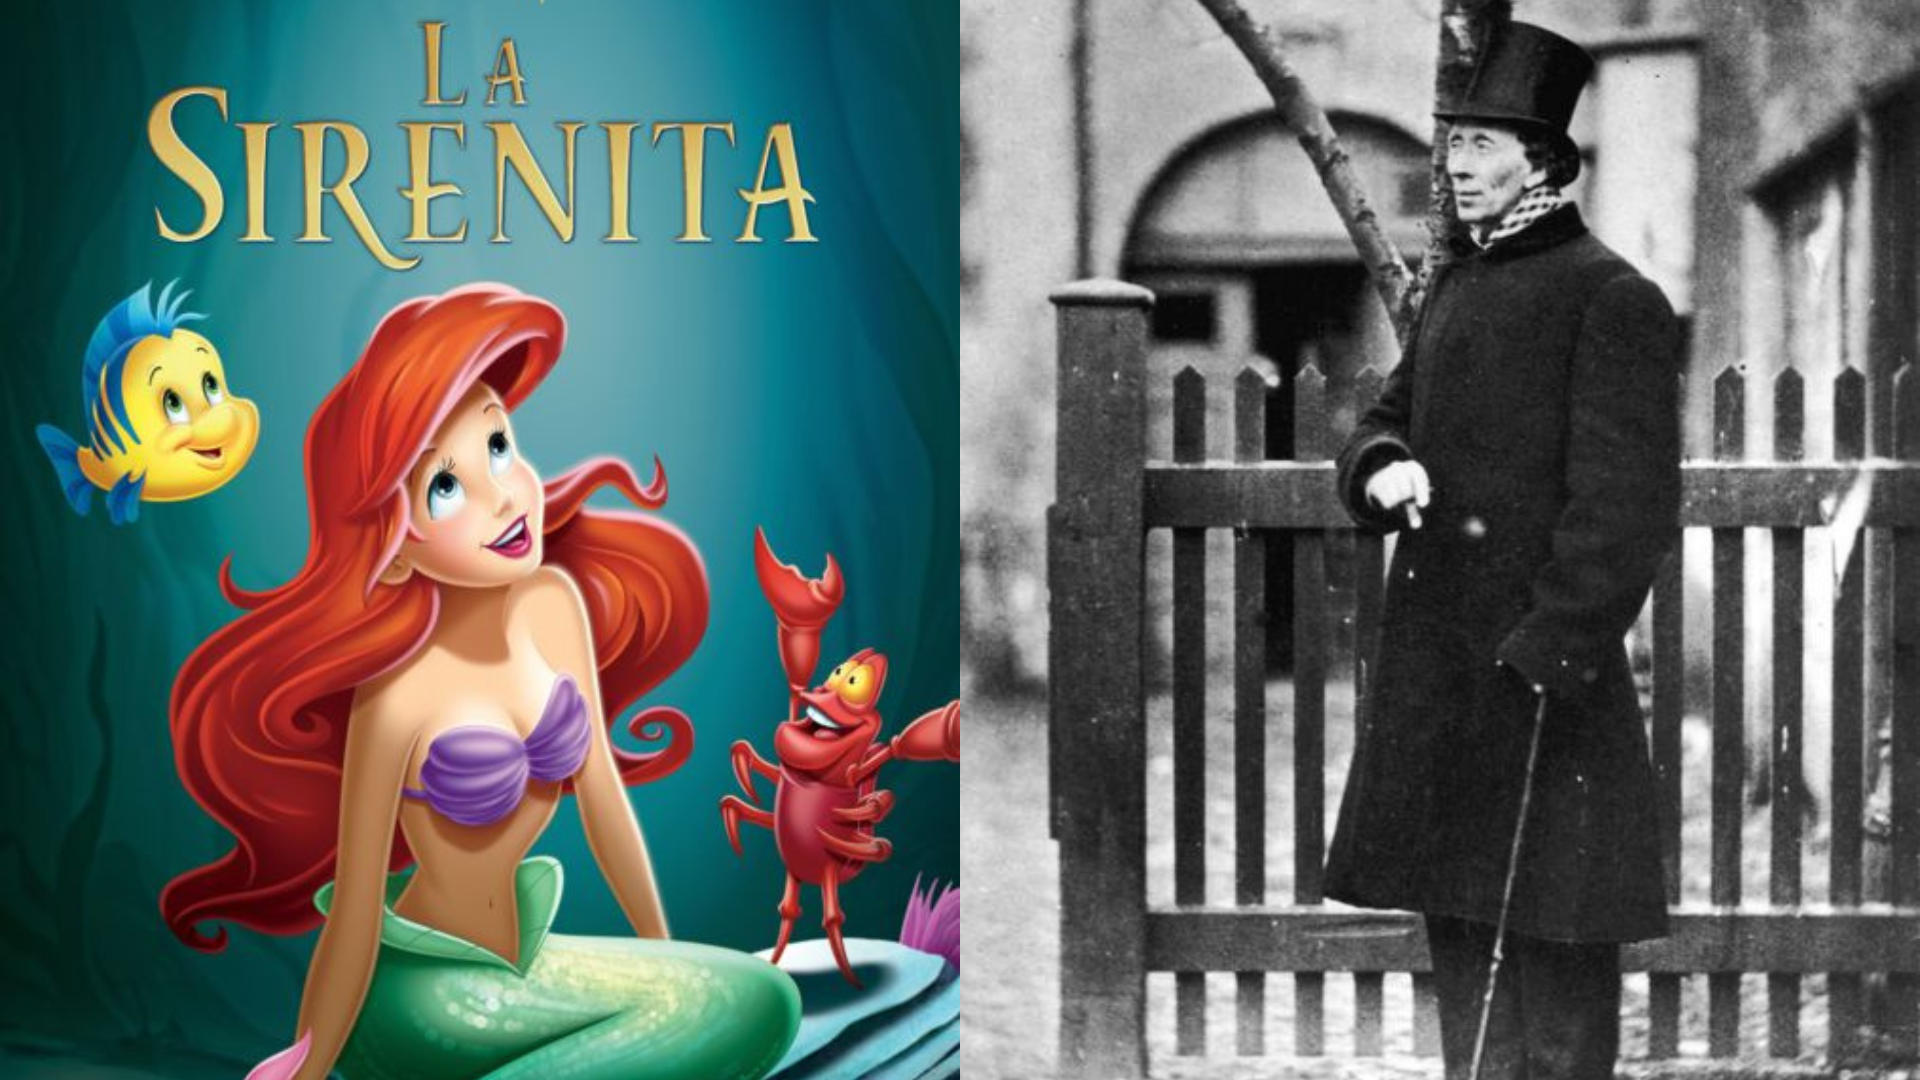 Verdadera historia de La Sirenita según el cuento original